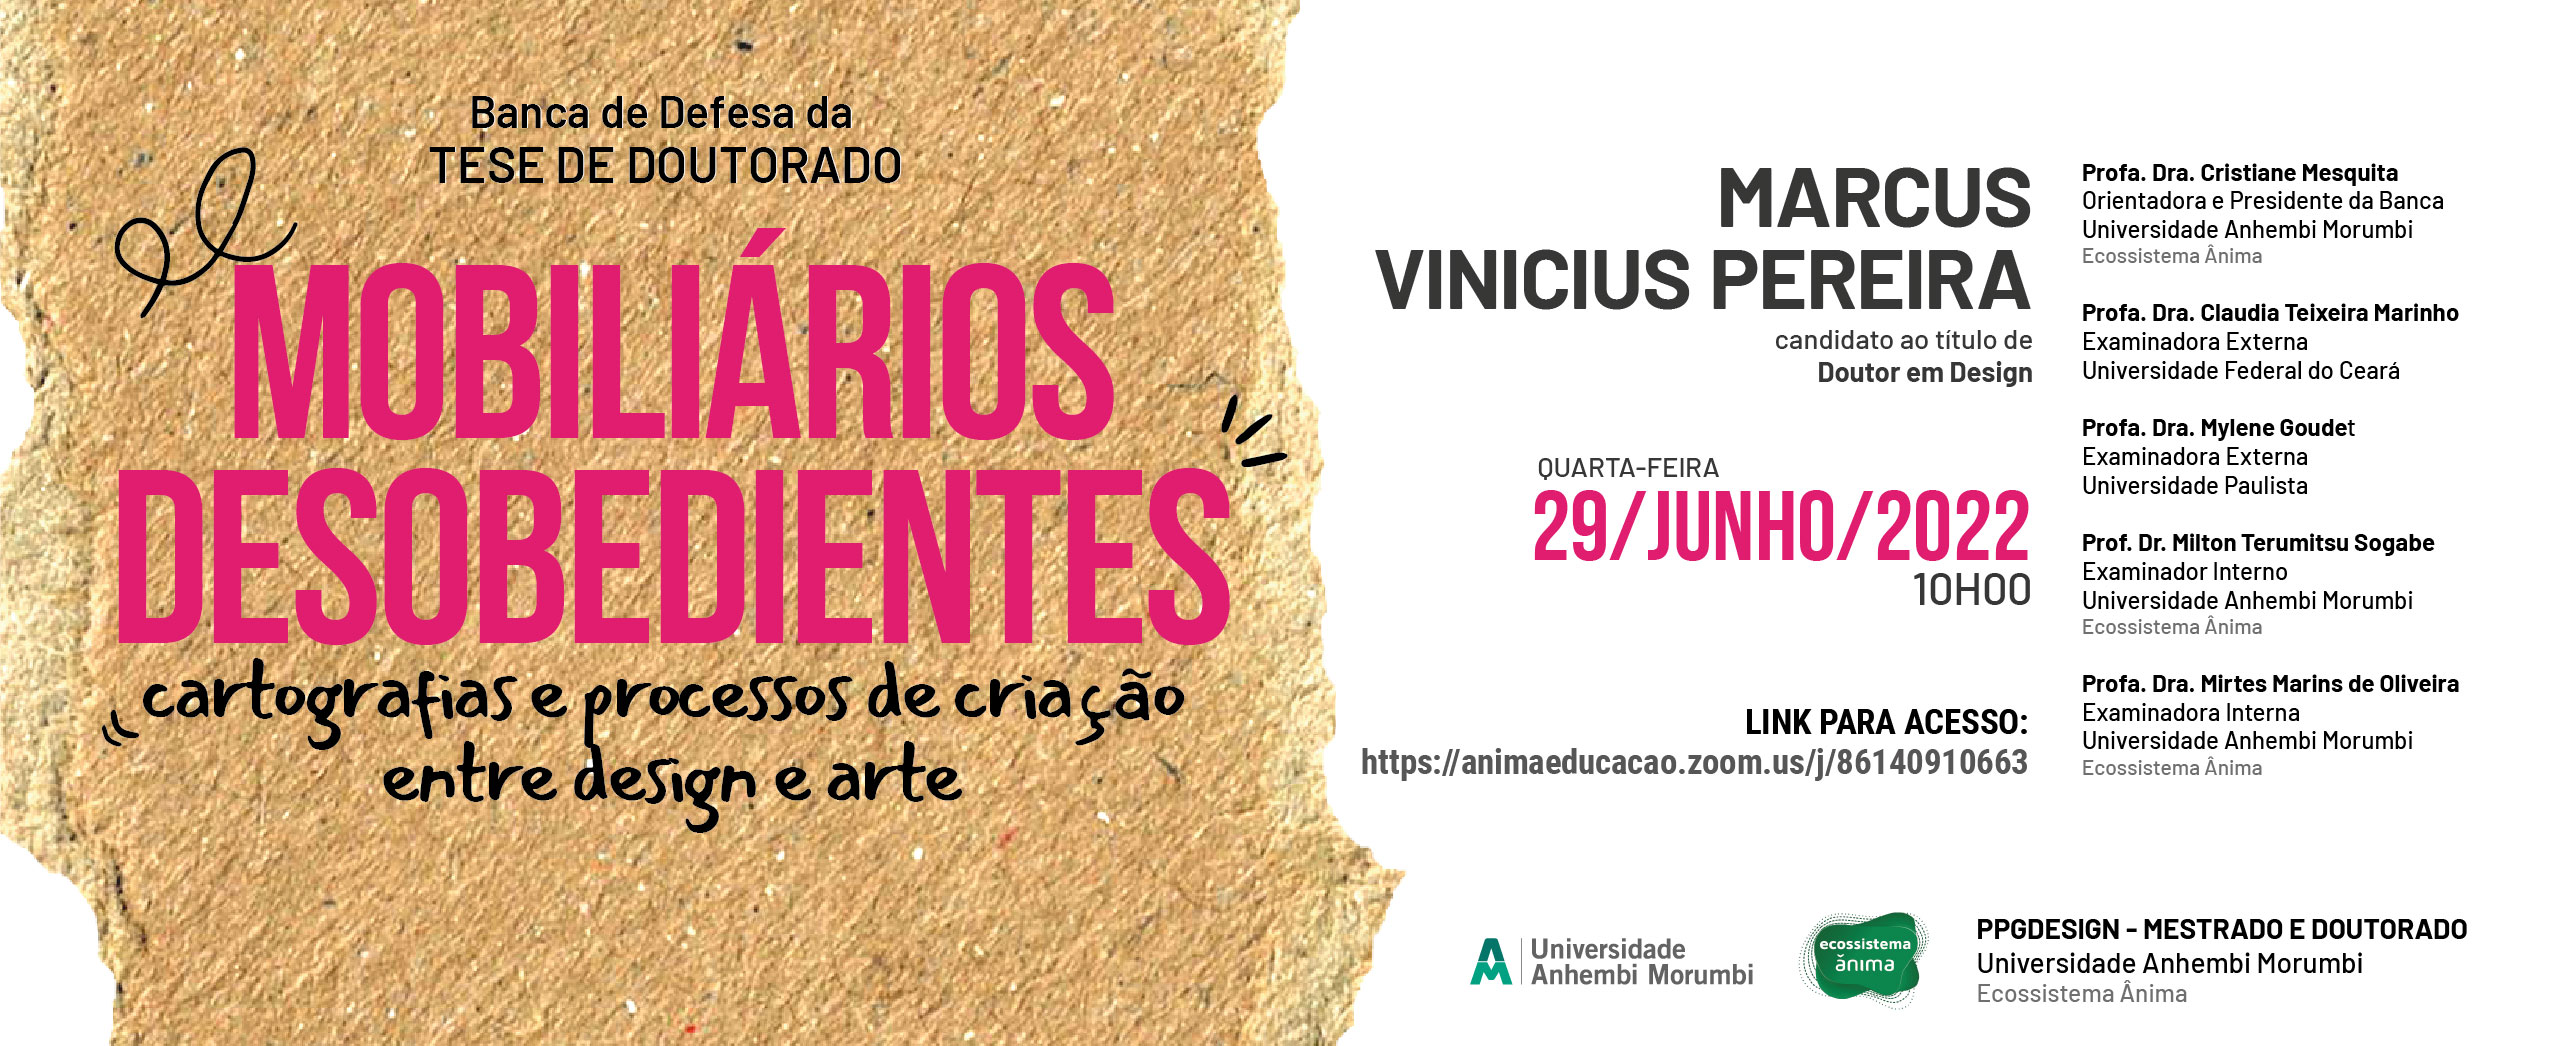 Cartaz - MOBILIÁRIOS DESOBEDIENTES: cartografias e processos de criação entre design e arte - Marcus Vinicius Pereira